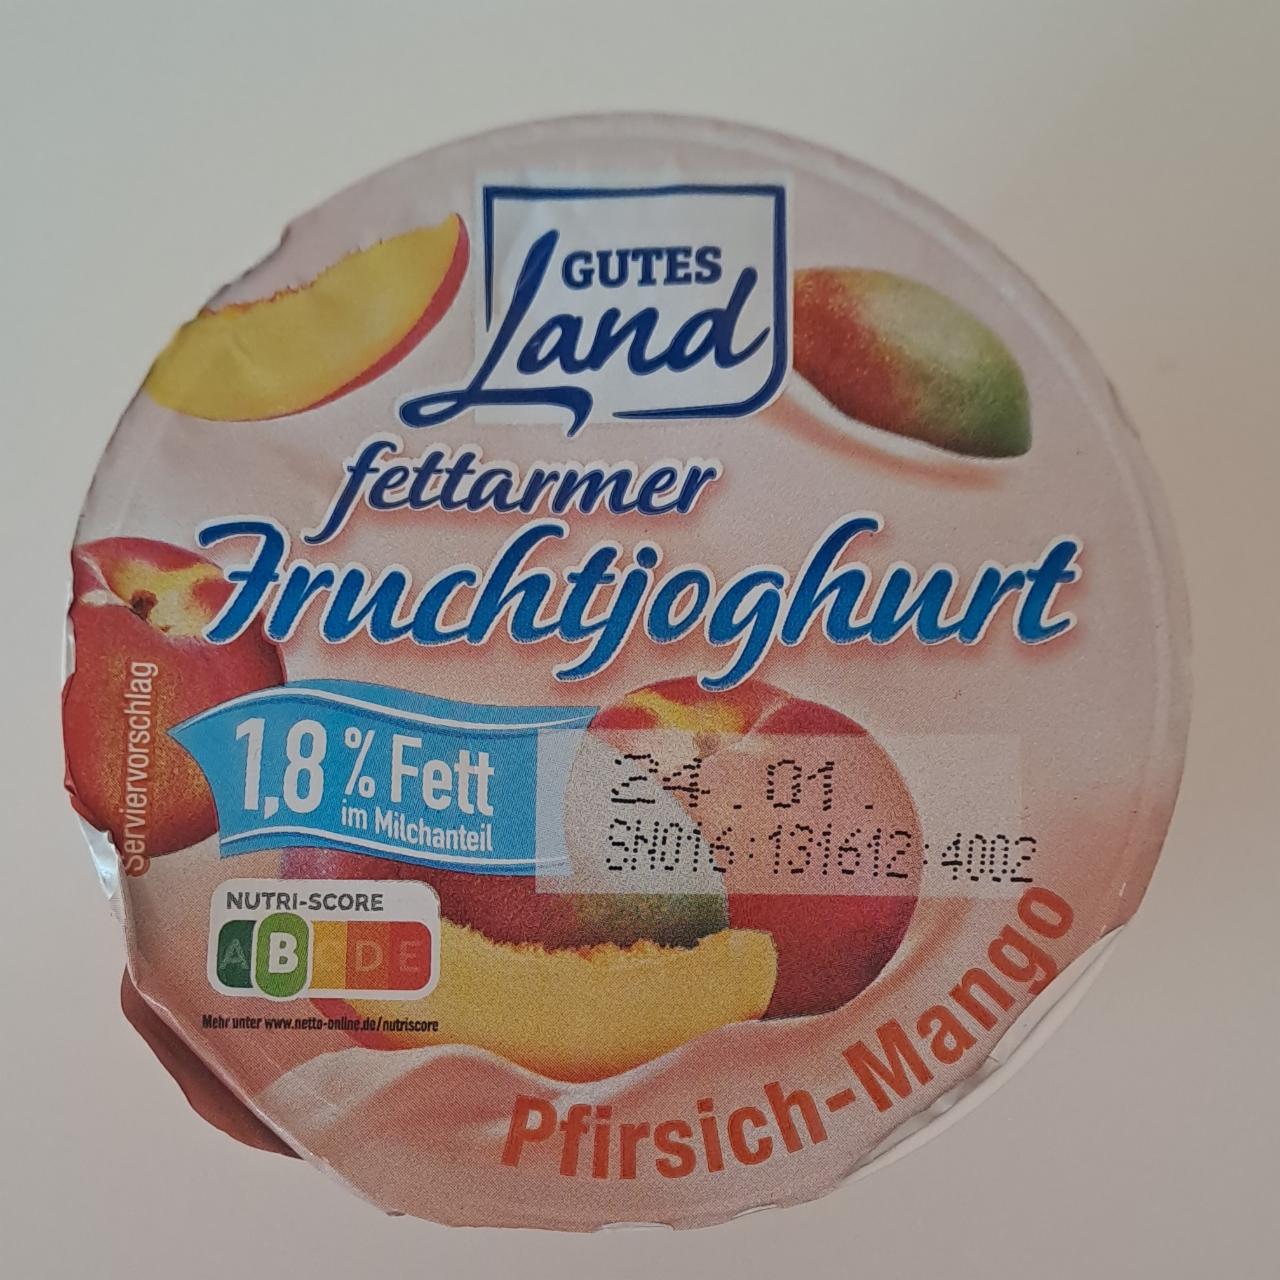 Fotografie - Fruchtjoghurt Pfirsich-Mango 1,8% Fett Gutes Land